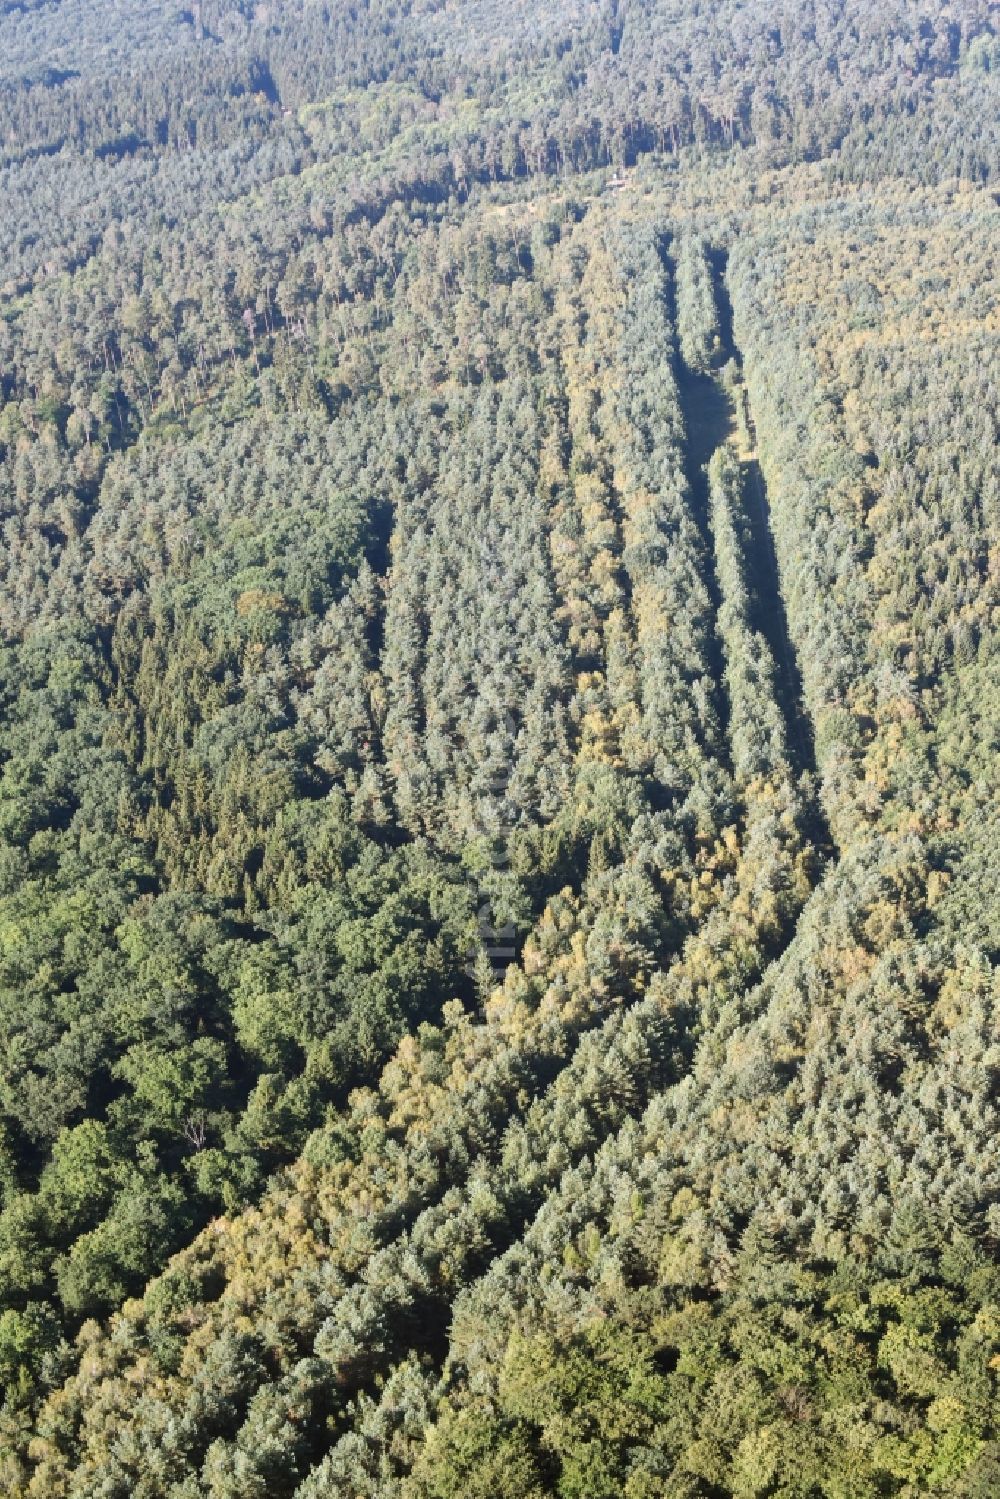 Walbeck von oben - Strecken- Verlauf der ehemaligen innerdeutschen Staatsgrenze in einem renaturierten Waldstück in Walbeck im Bundesland Sachsen-Anhalt